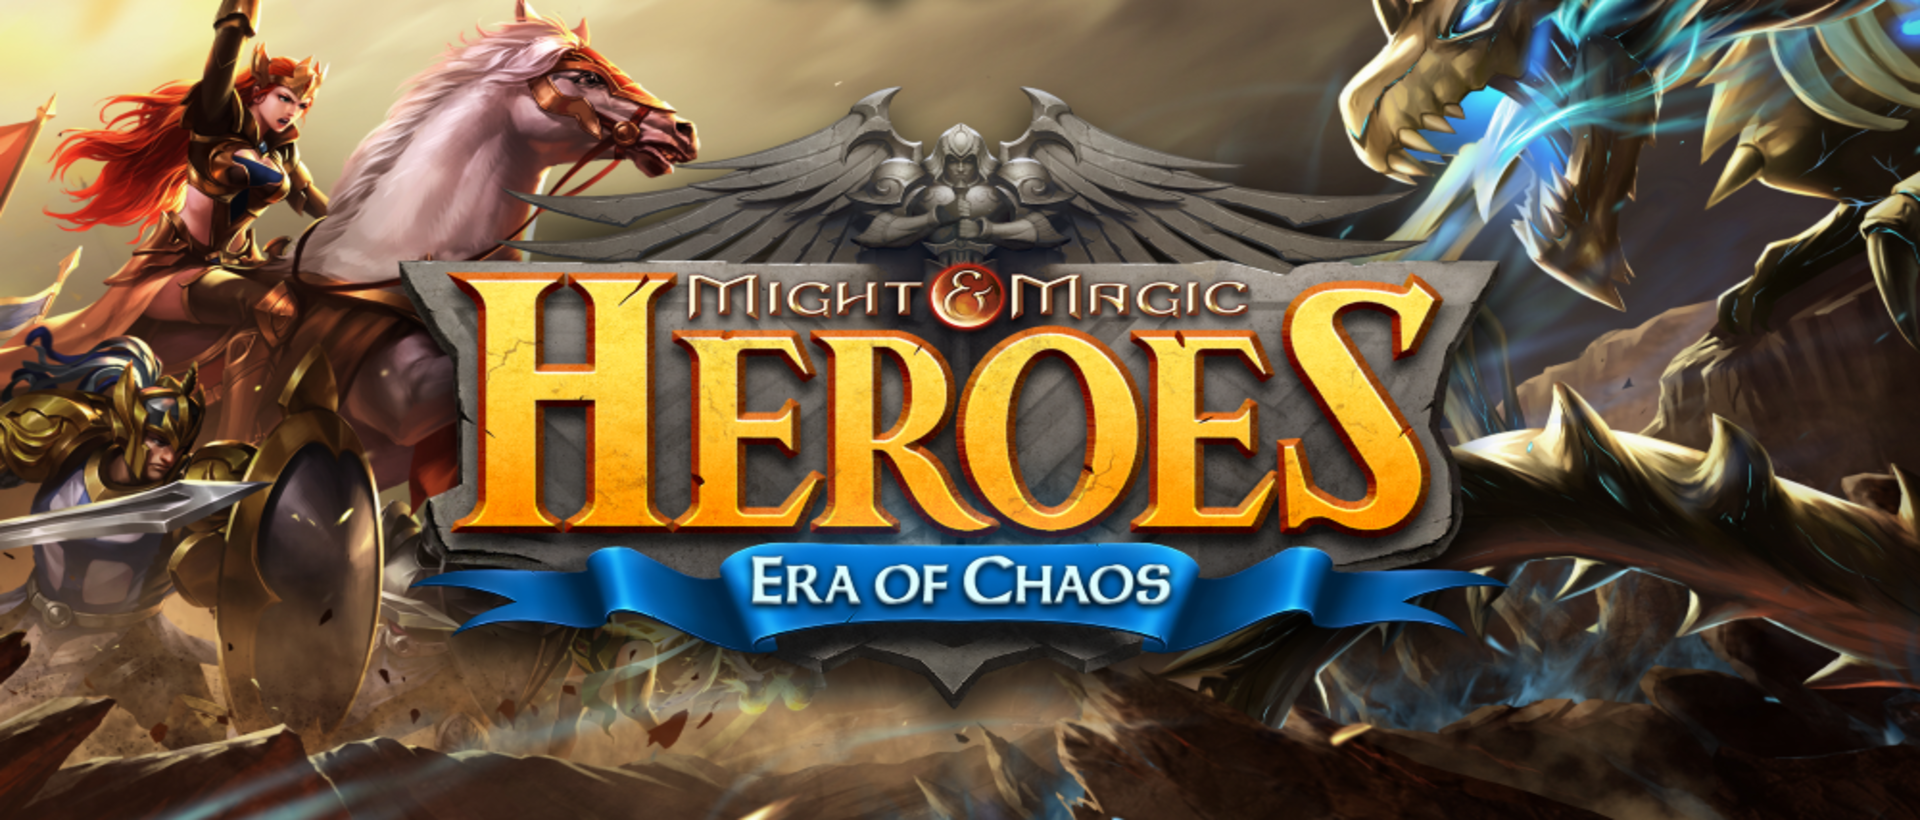 Chơi Might & Magic Heroes: Era of Chaos trên máy tính/PC cùng giả lập NoxPlayer